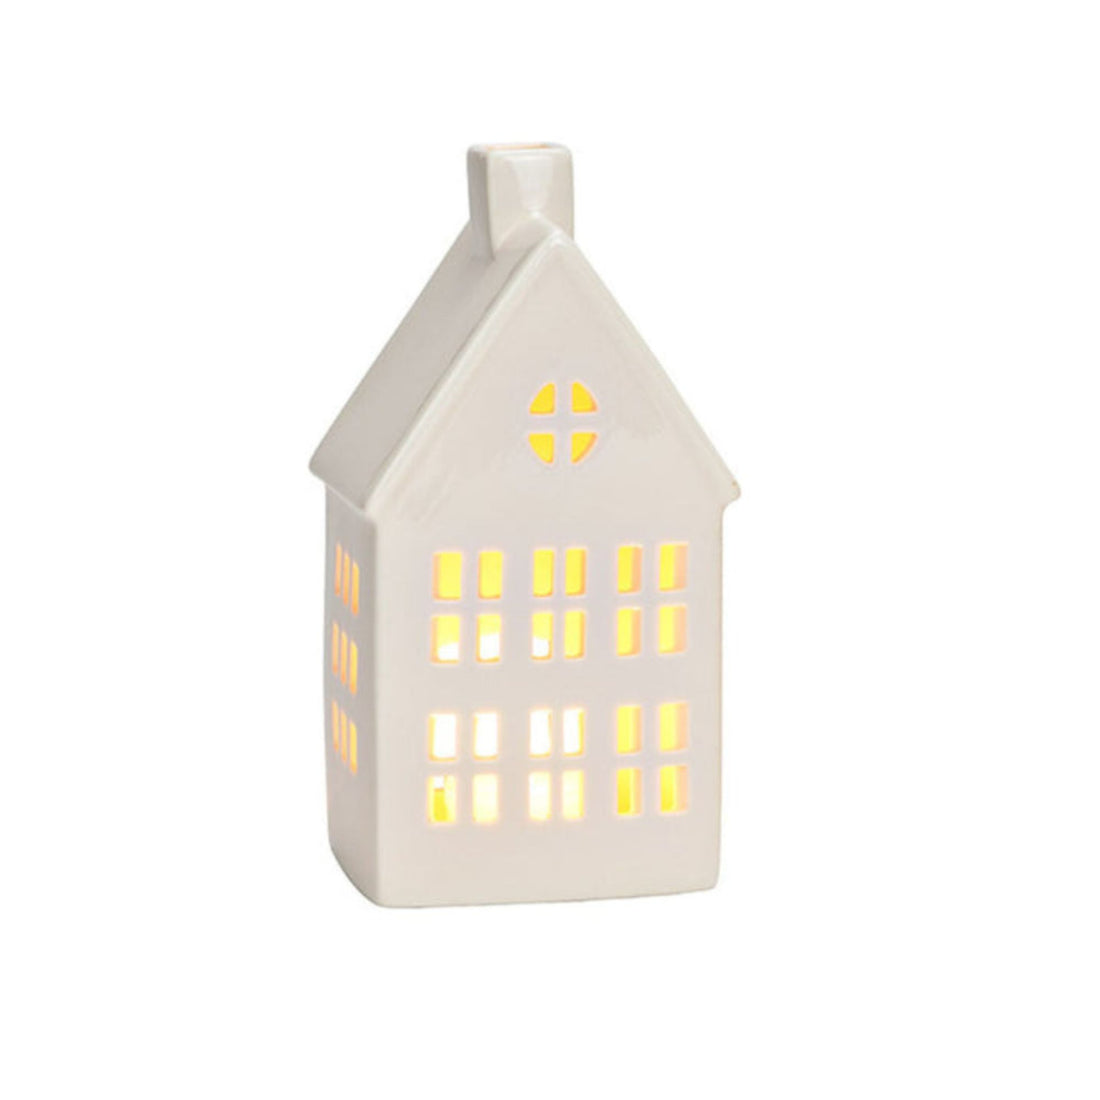 Lichthaus weiß aus Porzellan in 2 Varianten